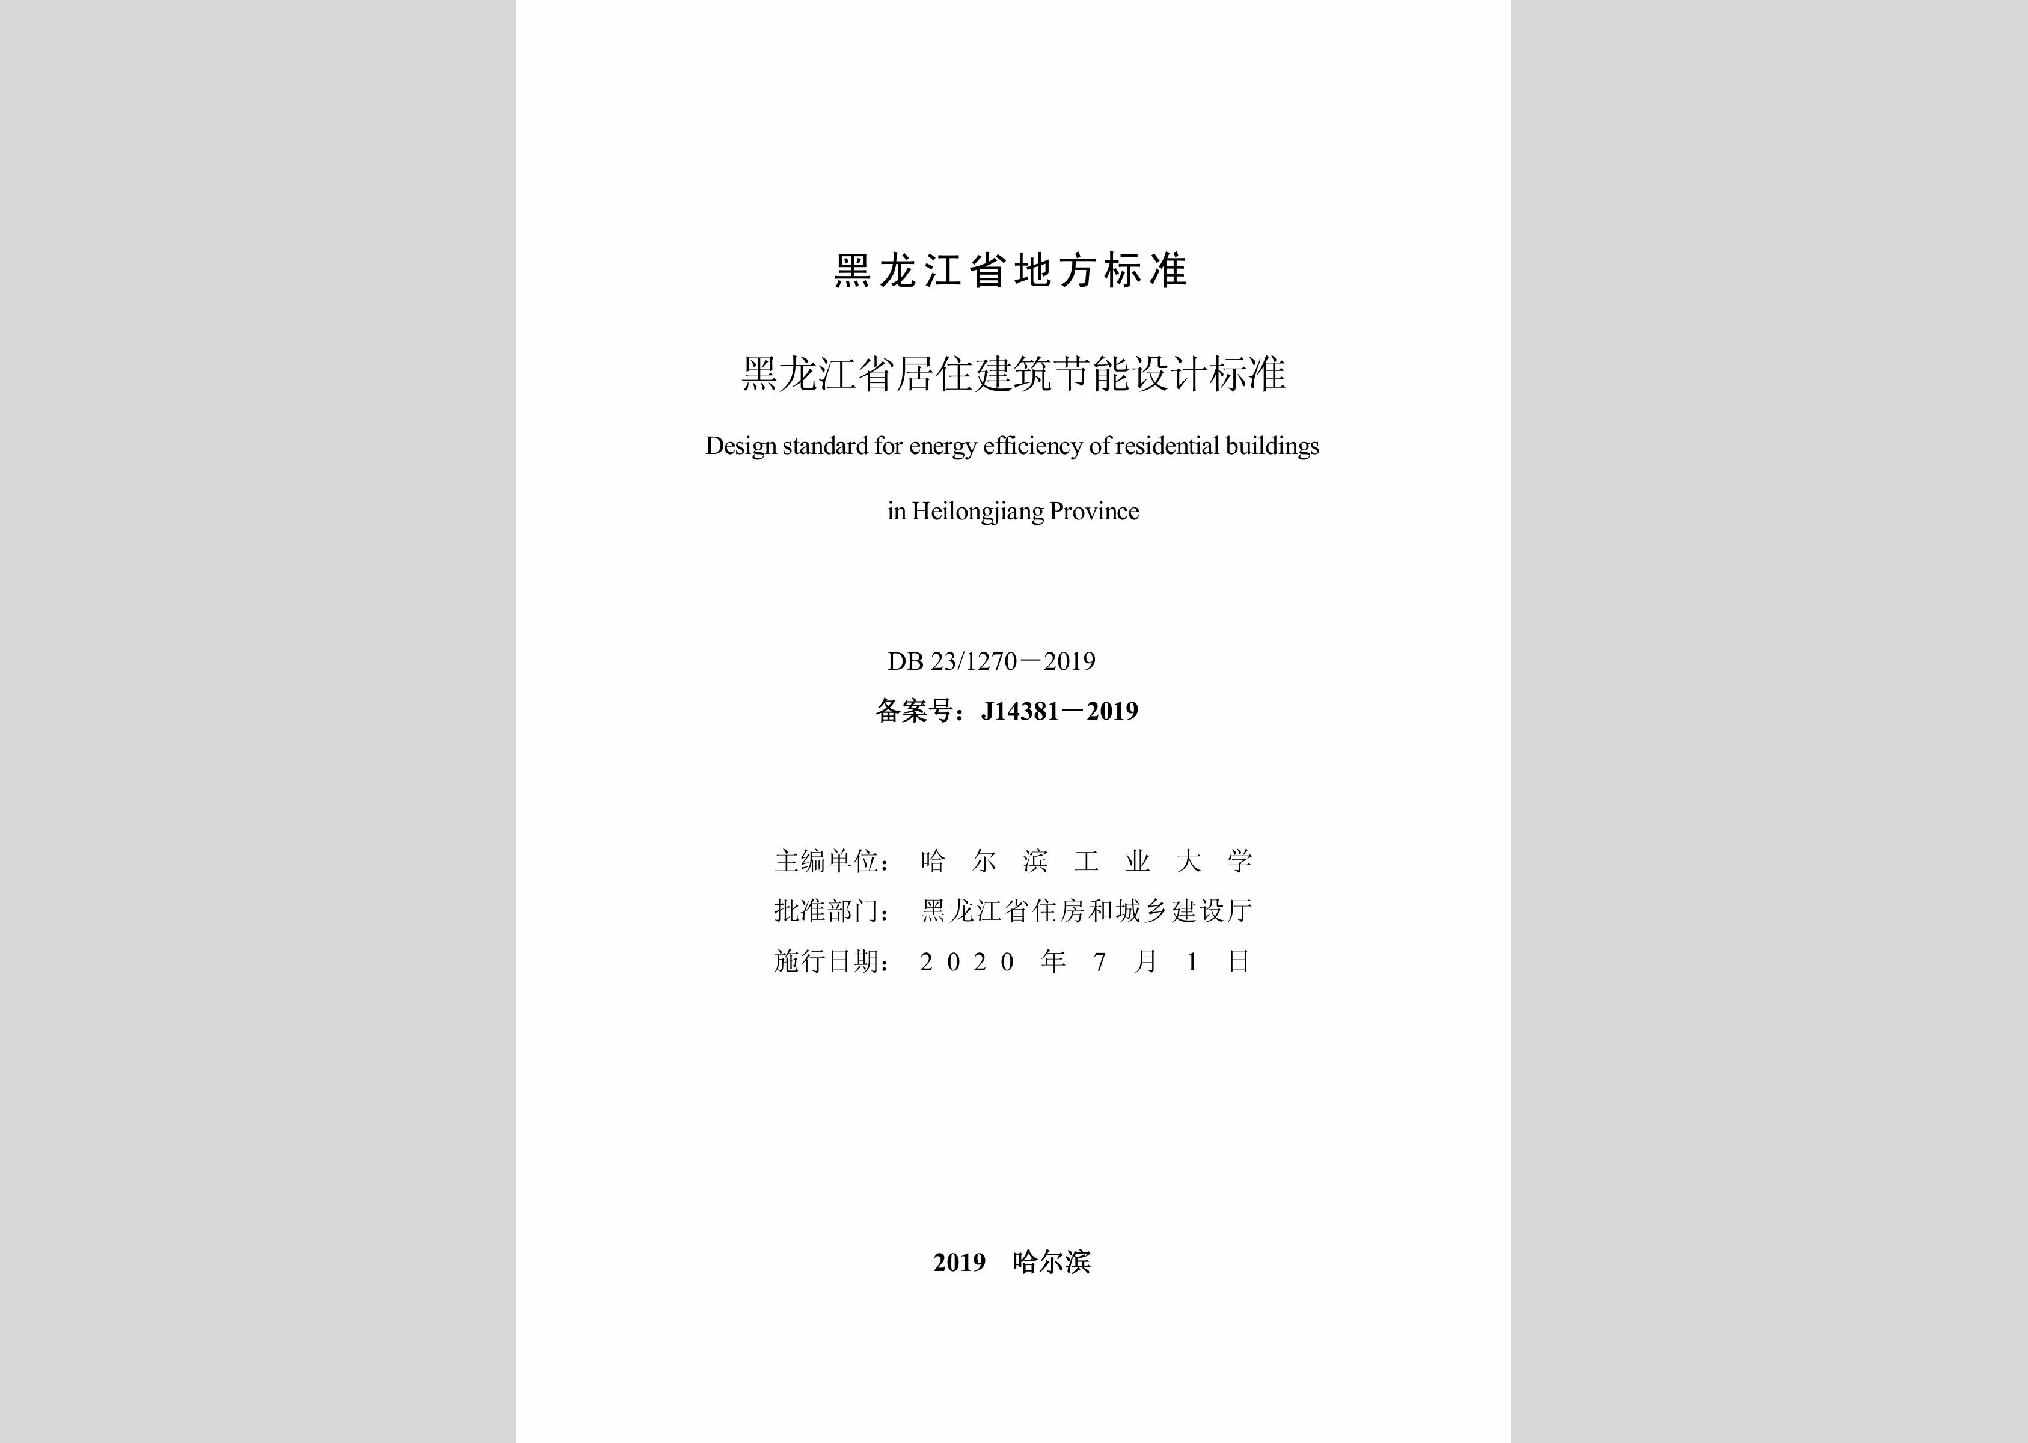 DB23/1270-2019：黑龙江省居住建筑节能设计标准